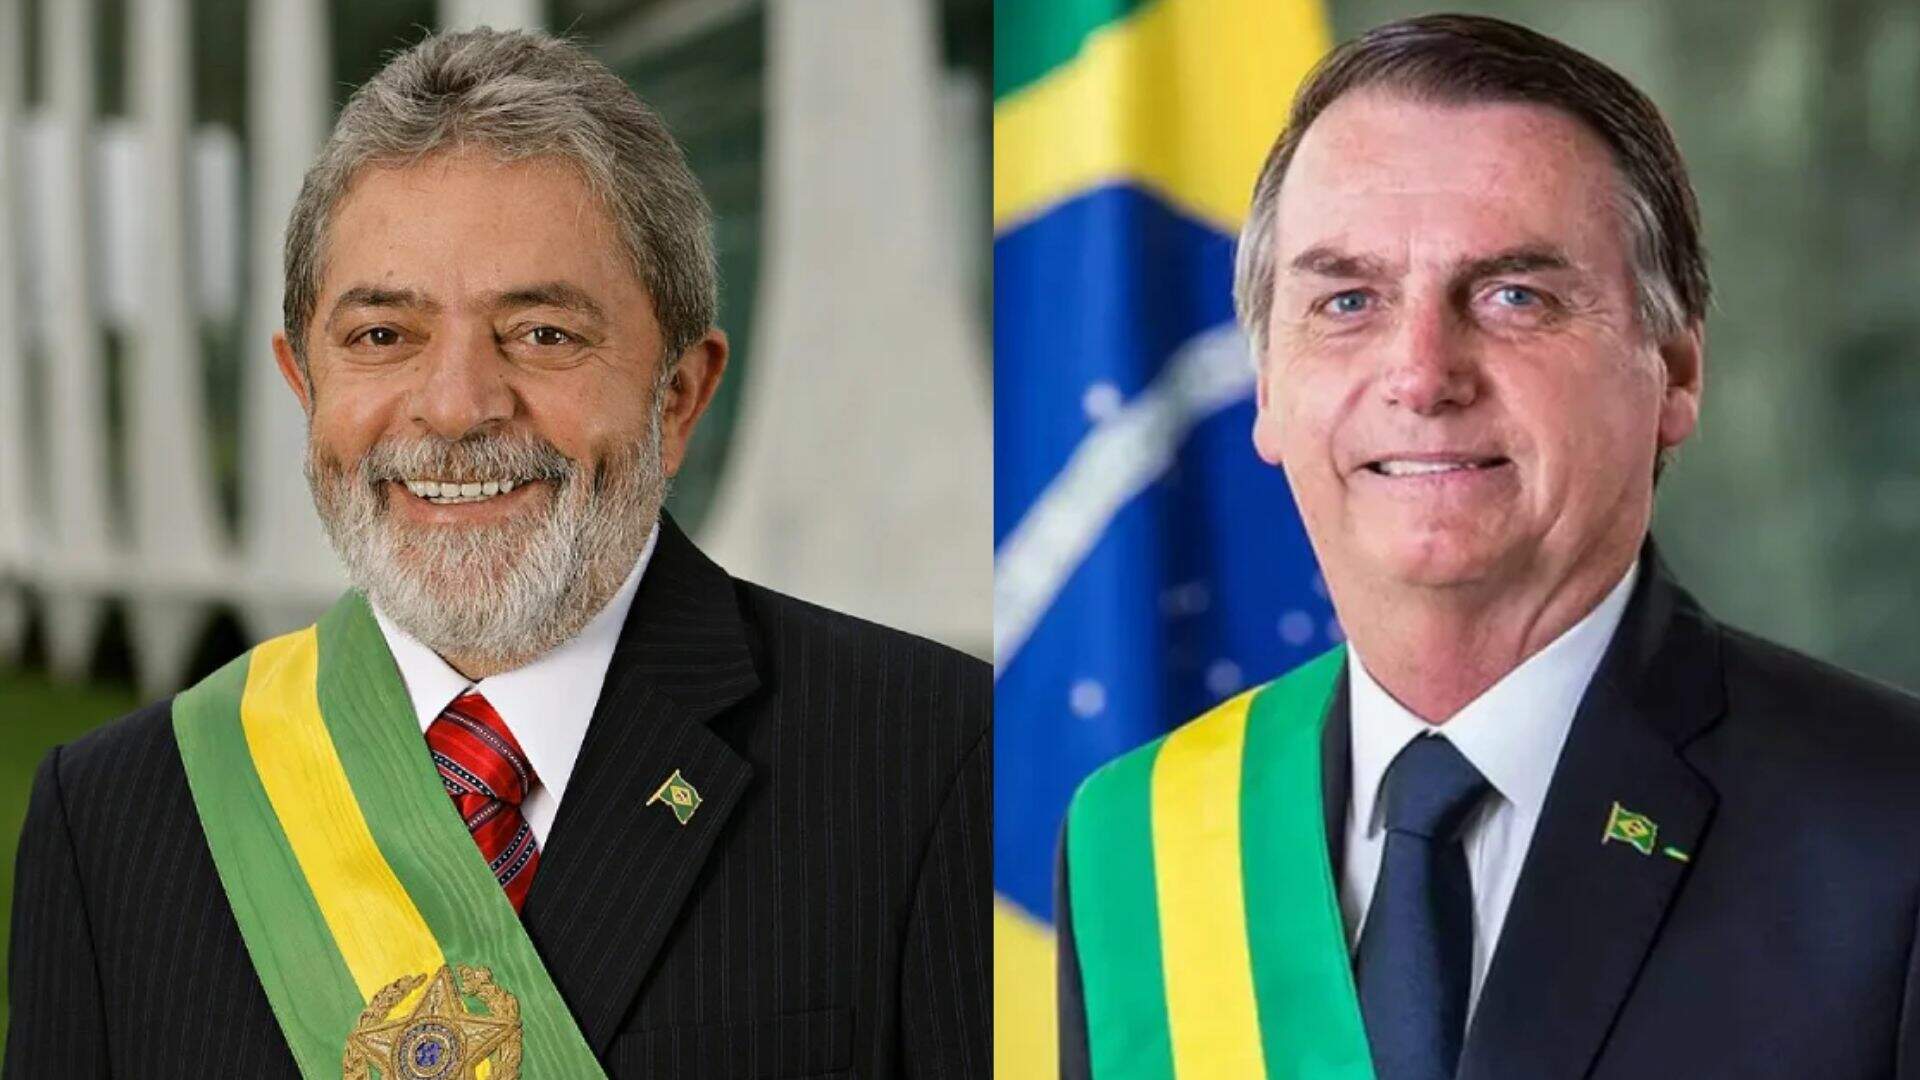 Escândalo na política: Bolsonaro toma atitude drástica contra Lula e Justiça é envolvida em caso chocante